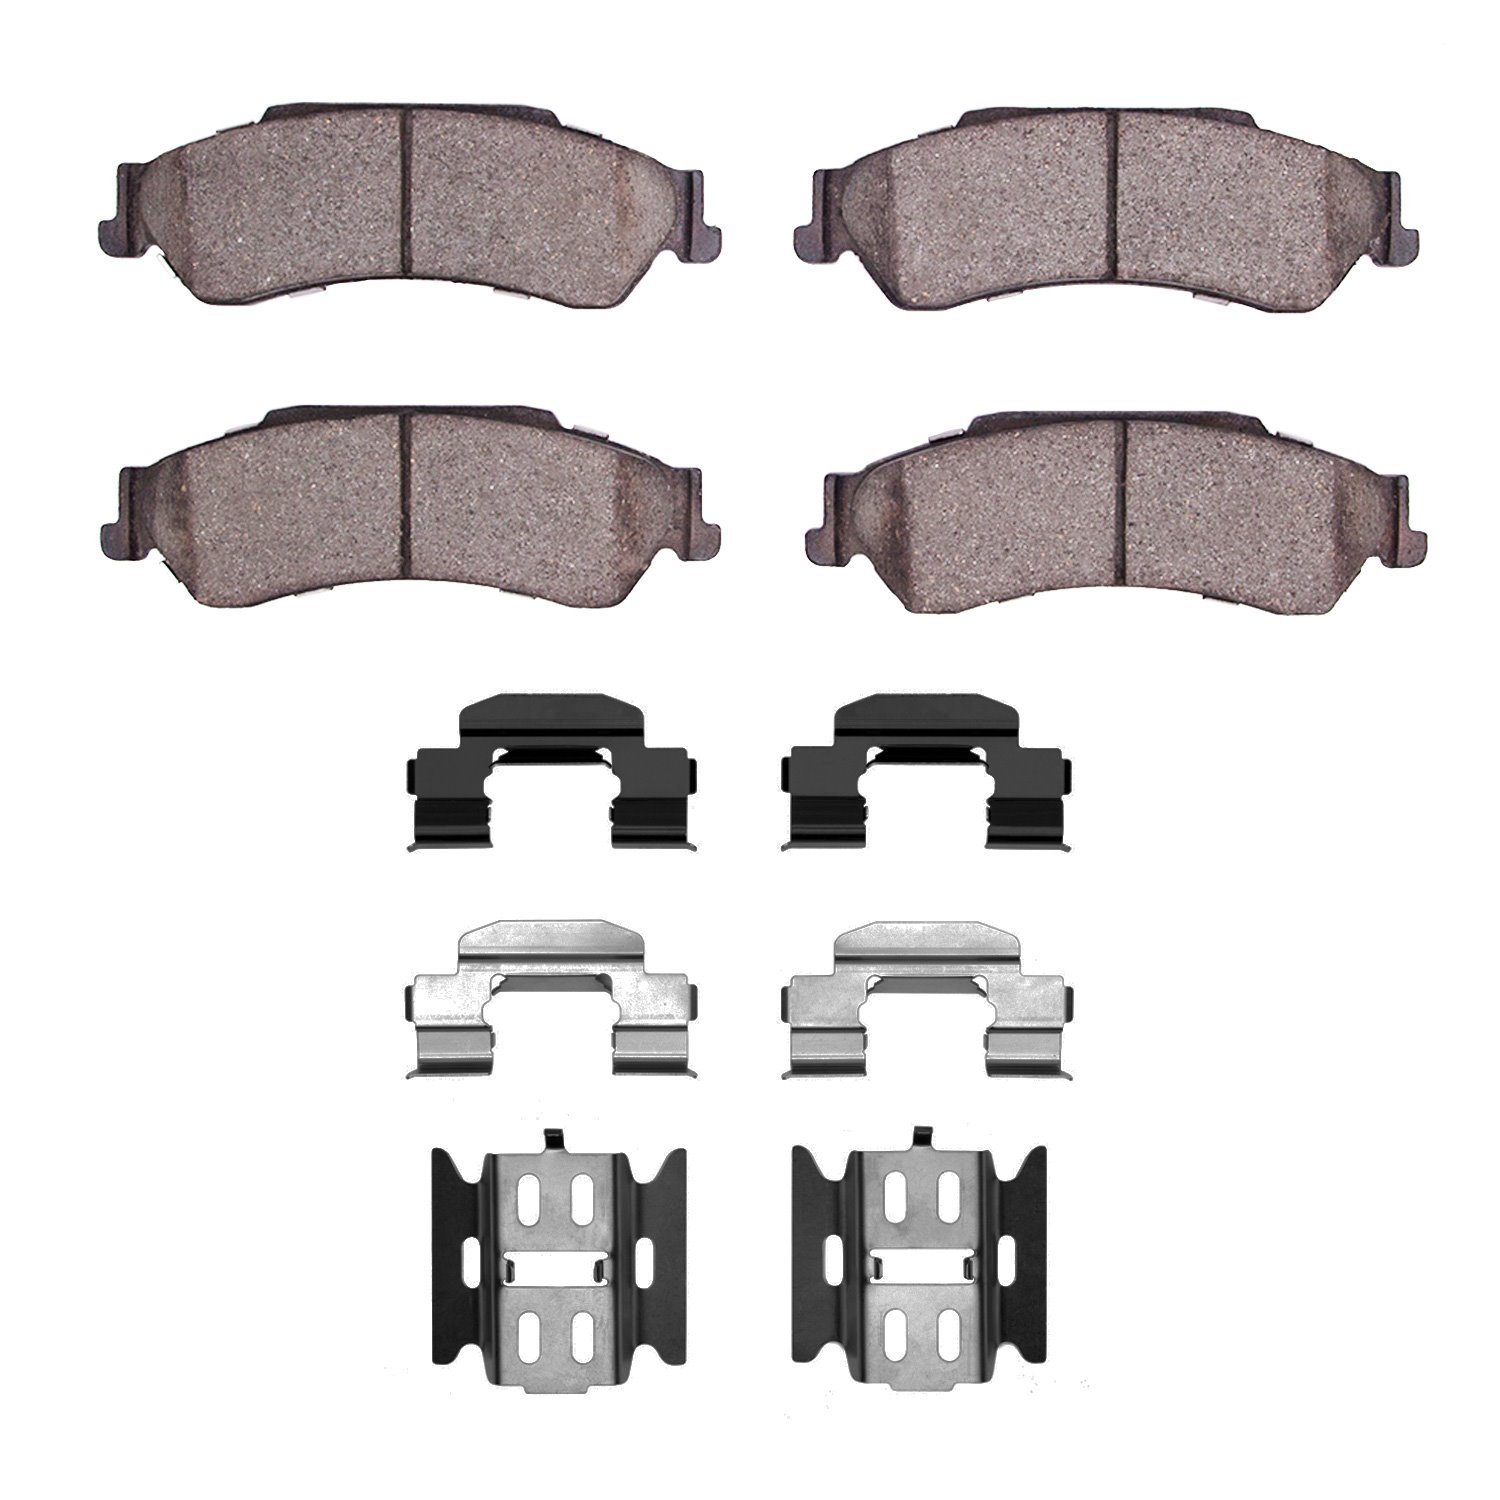 1310-0729-01 3000-Series Ceramic Brake Pads & Hardware Kit, 1997-2005 GM, Position: Rear